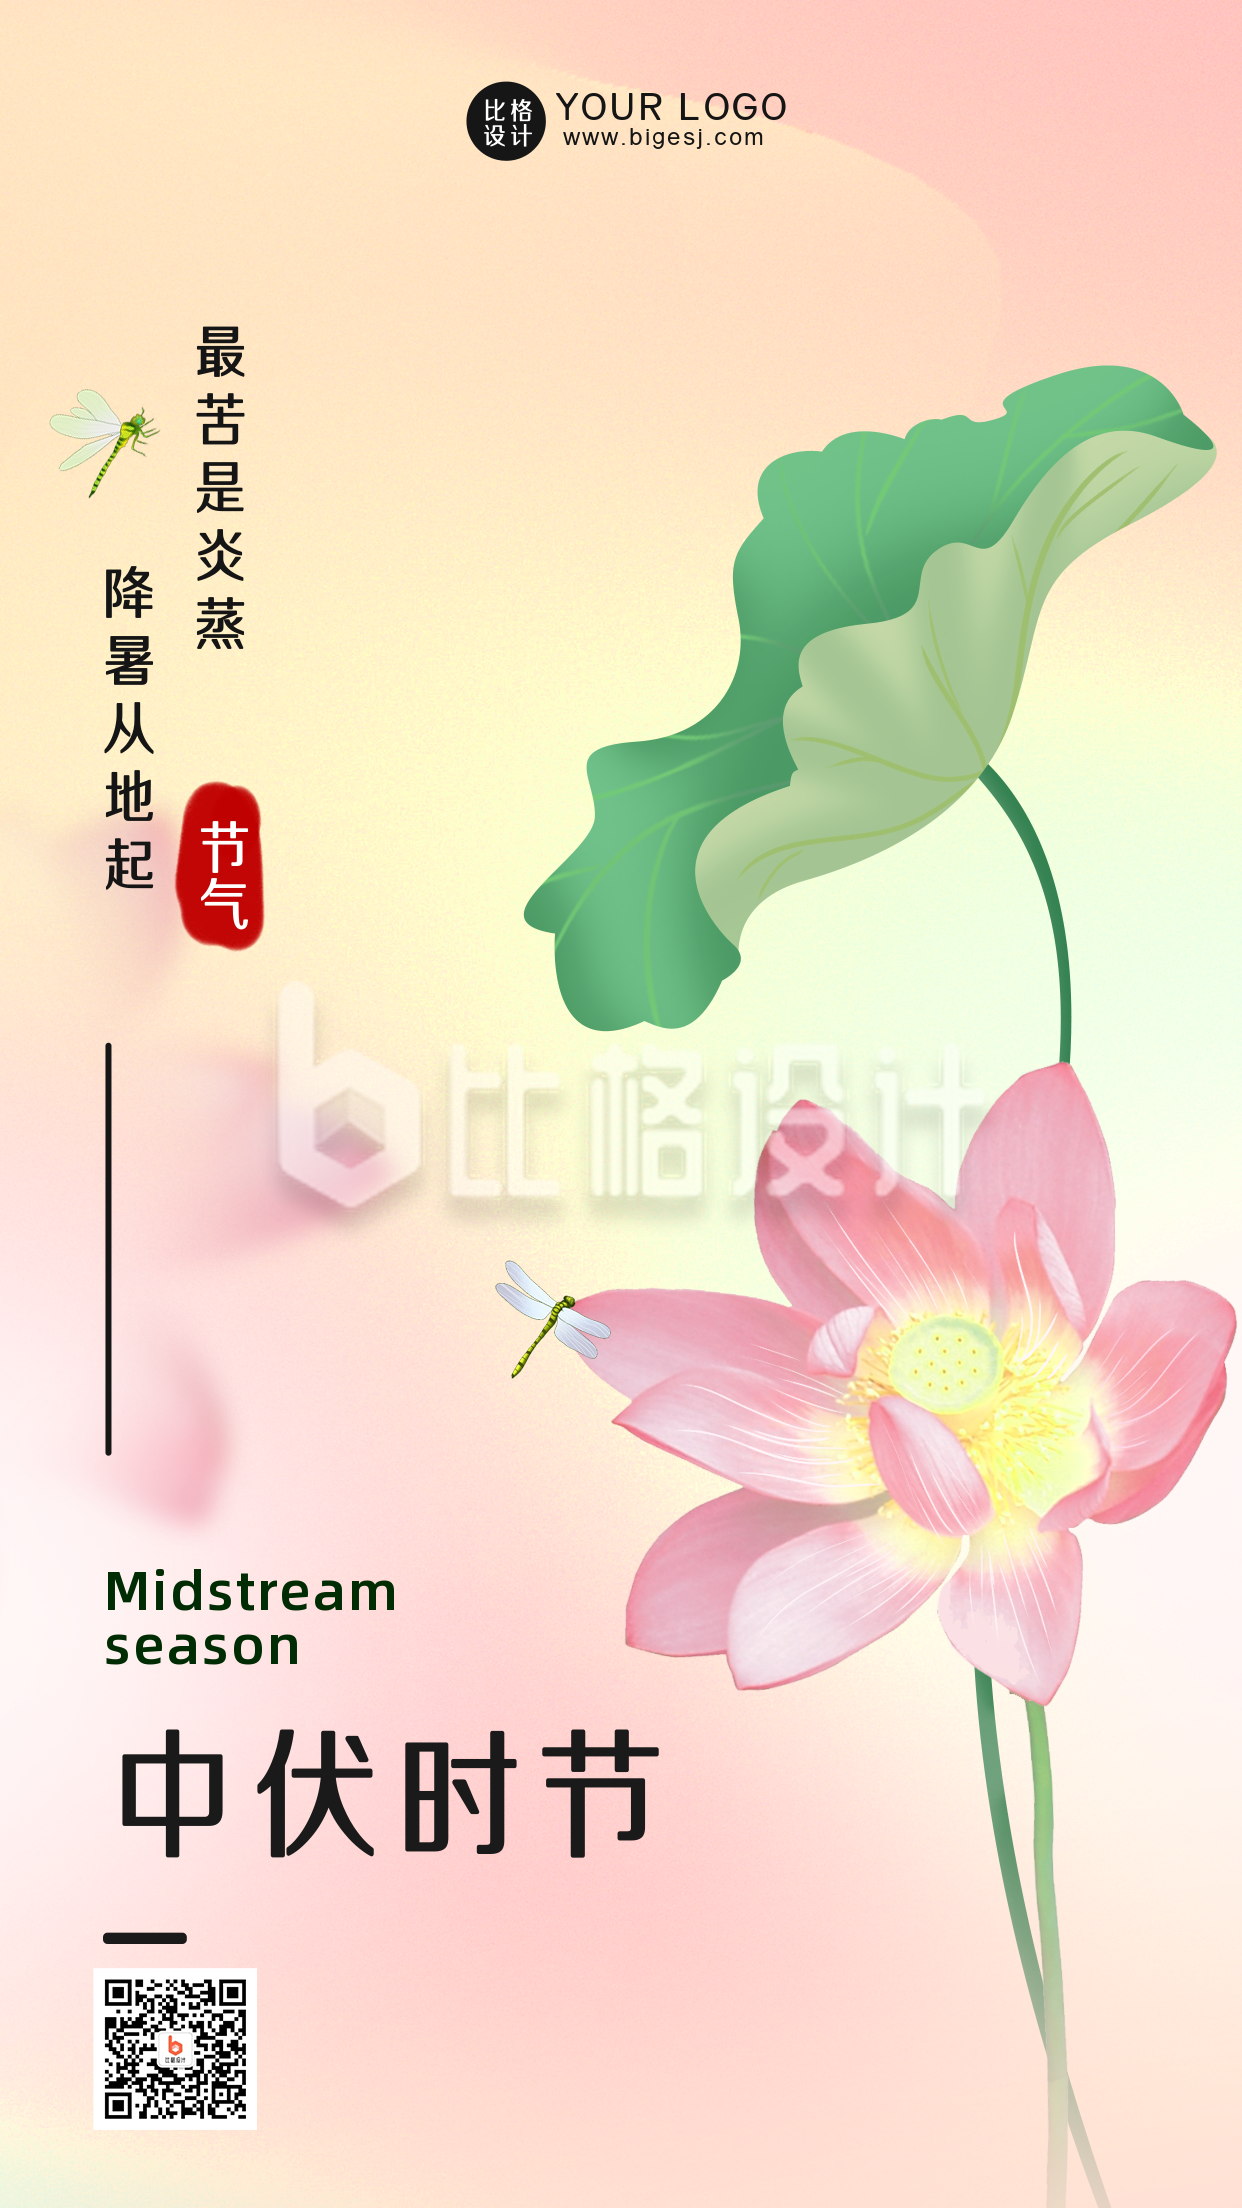 中伏传统节气粉色手绘宣传手机海报